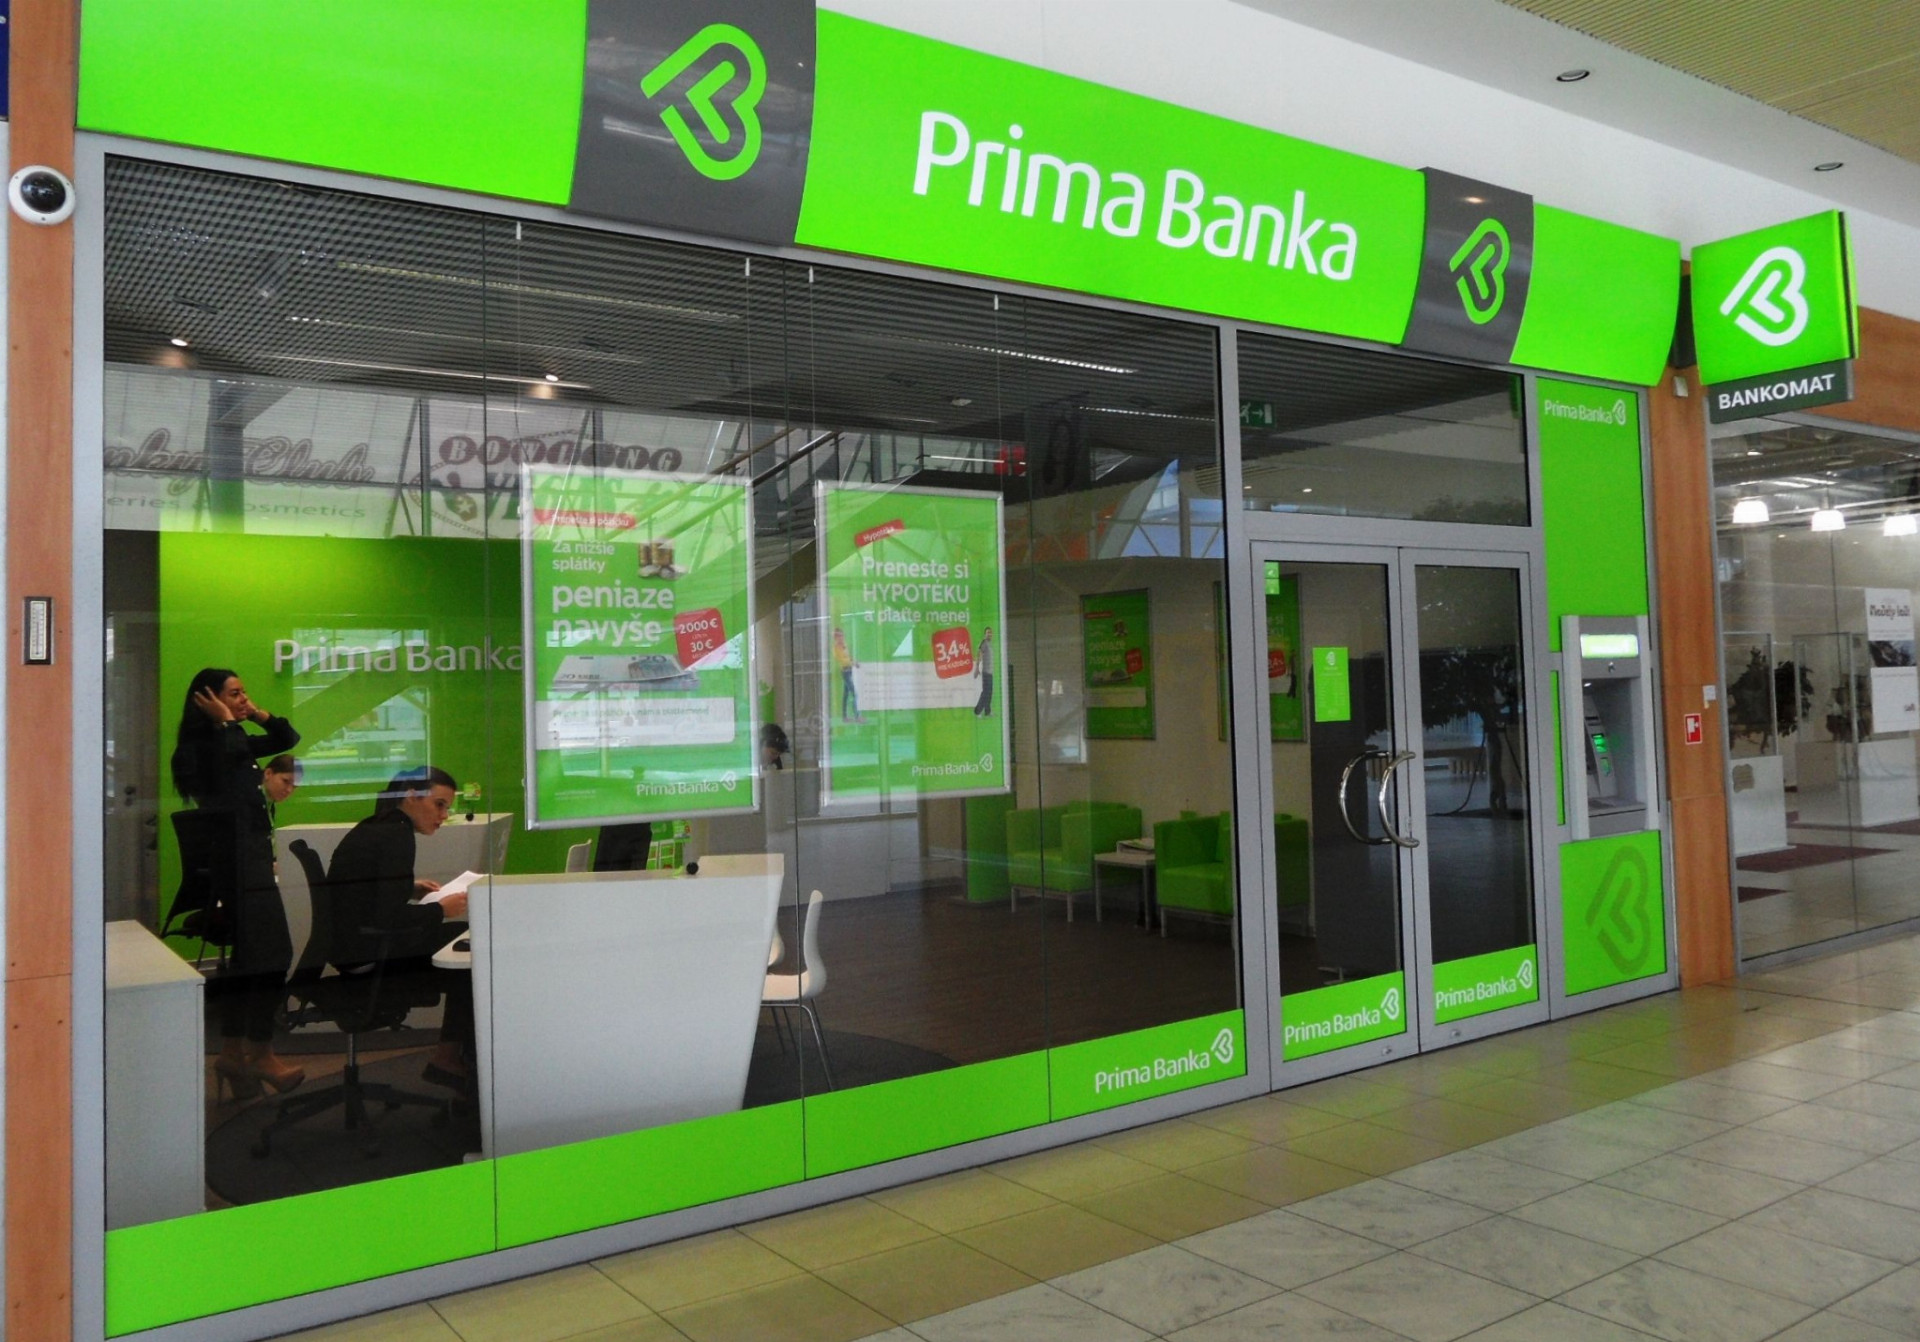 Prima Banka